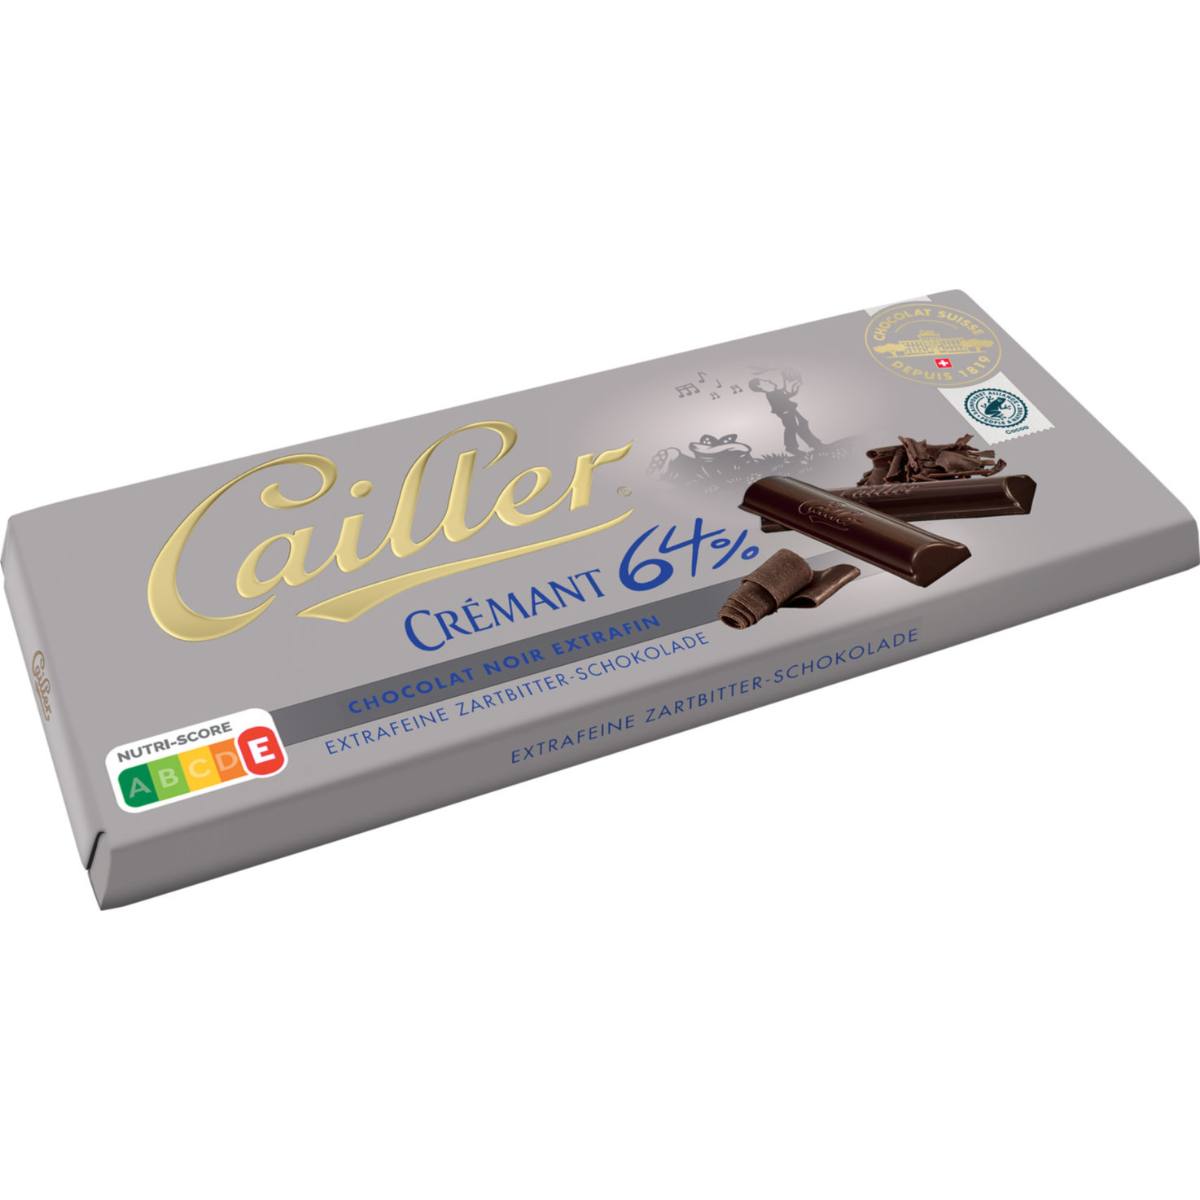 cailler cremant 64% schokolade v1